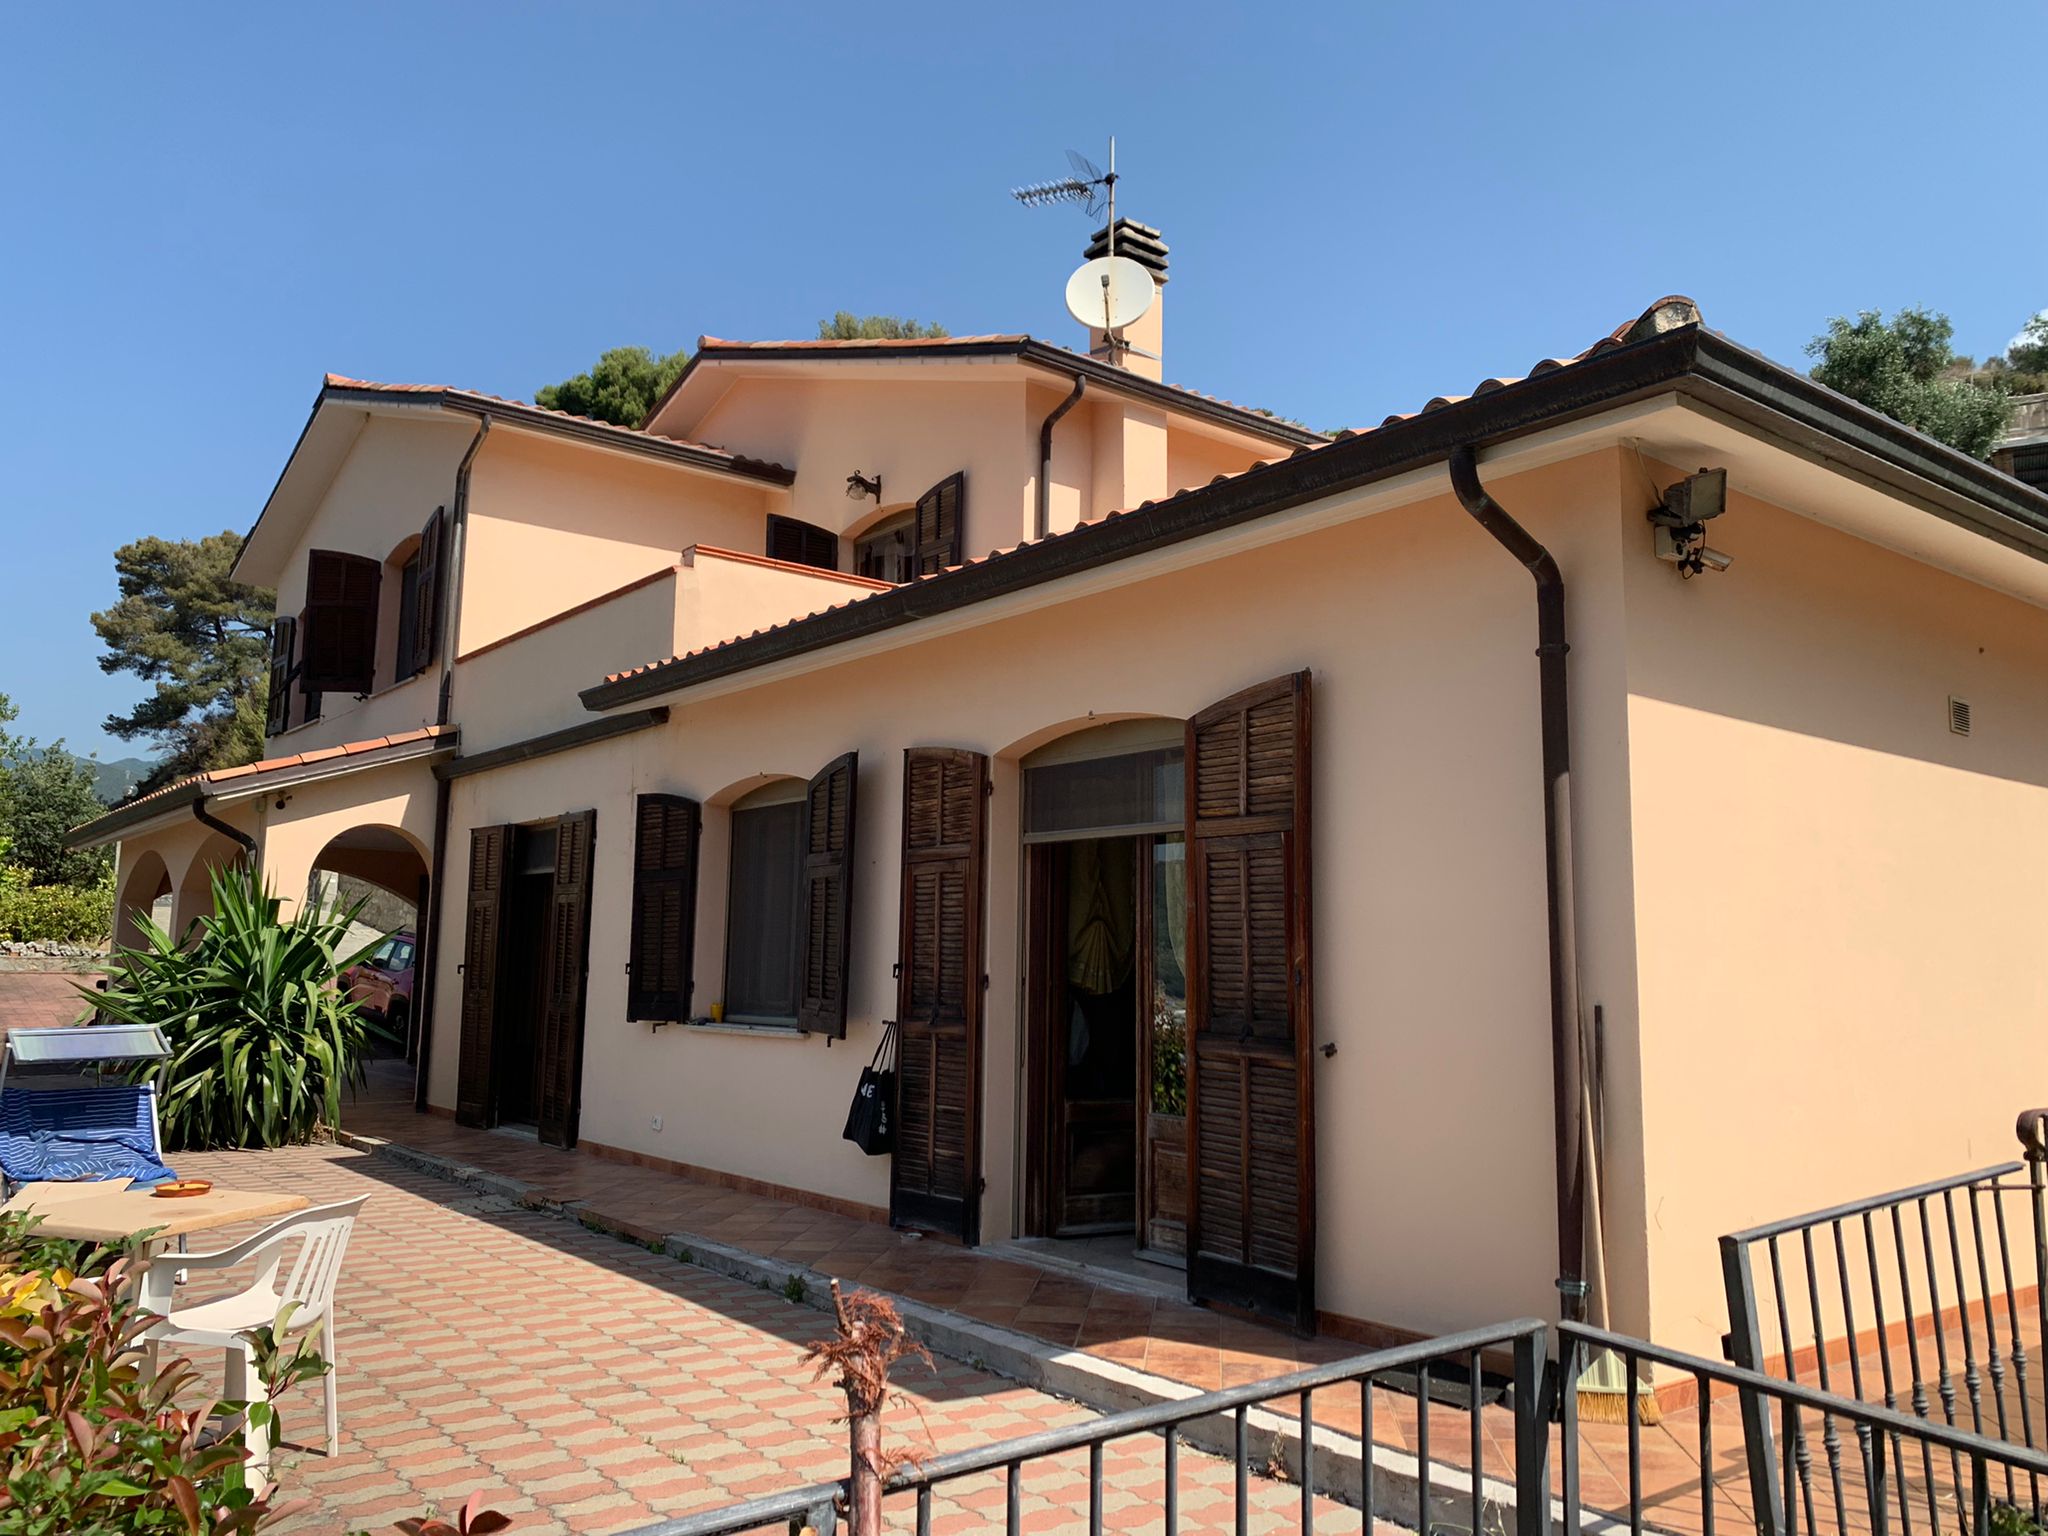 For sale villa in quiet zone Taggia Liguria